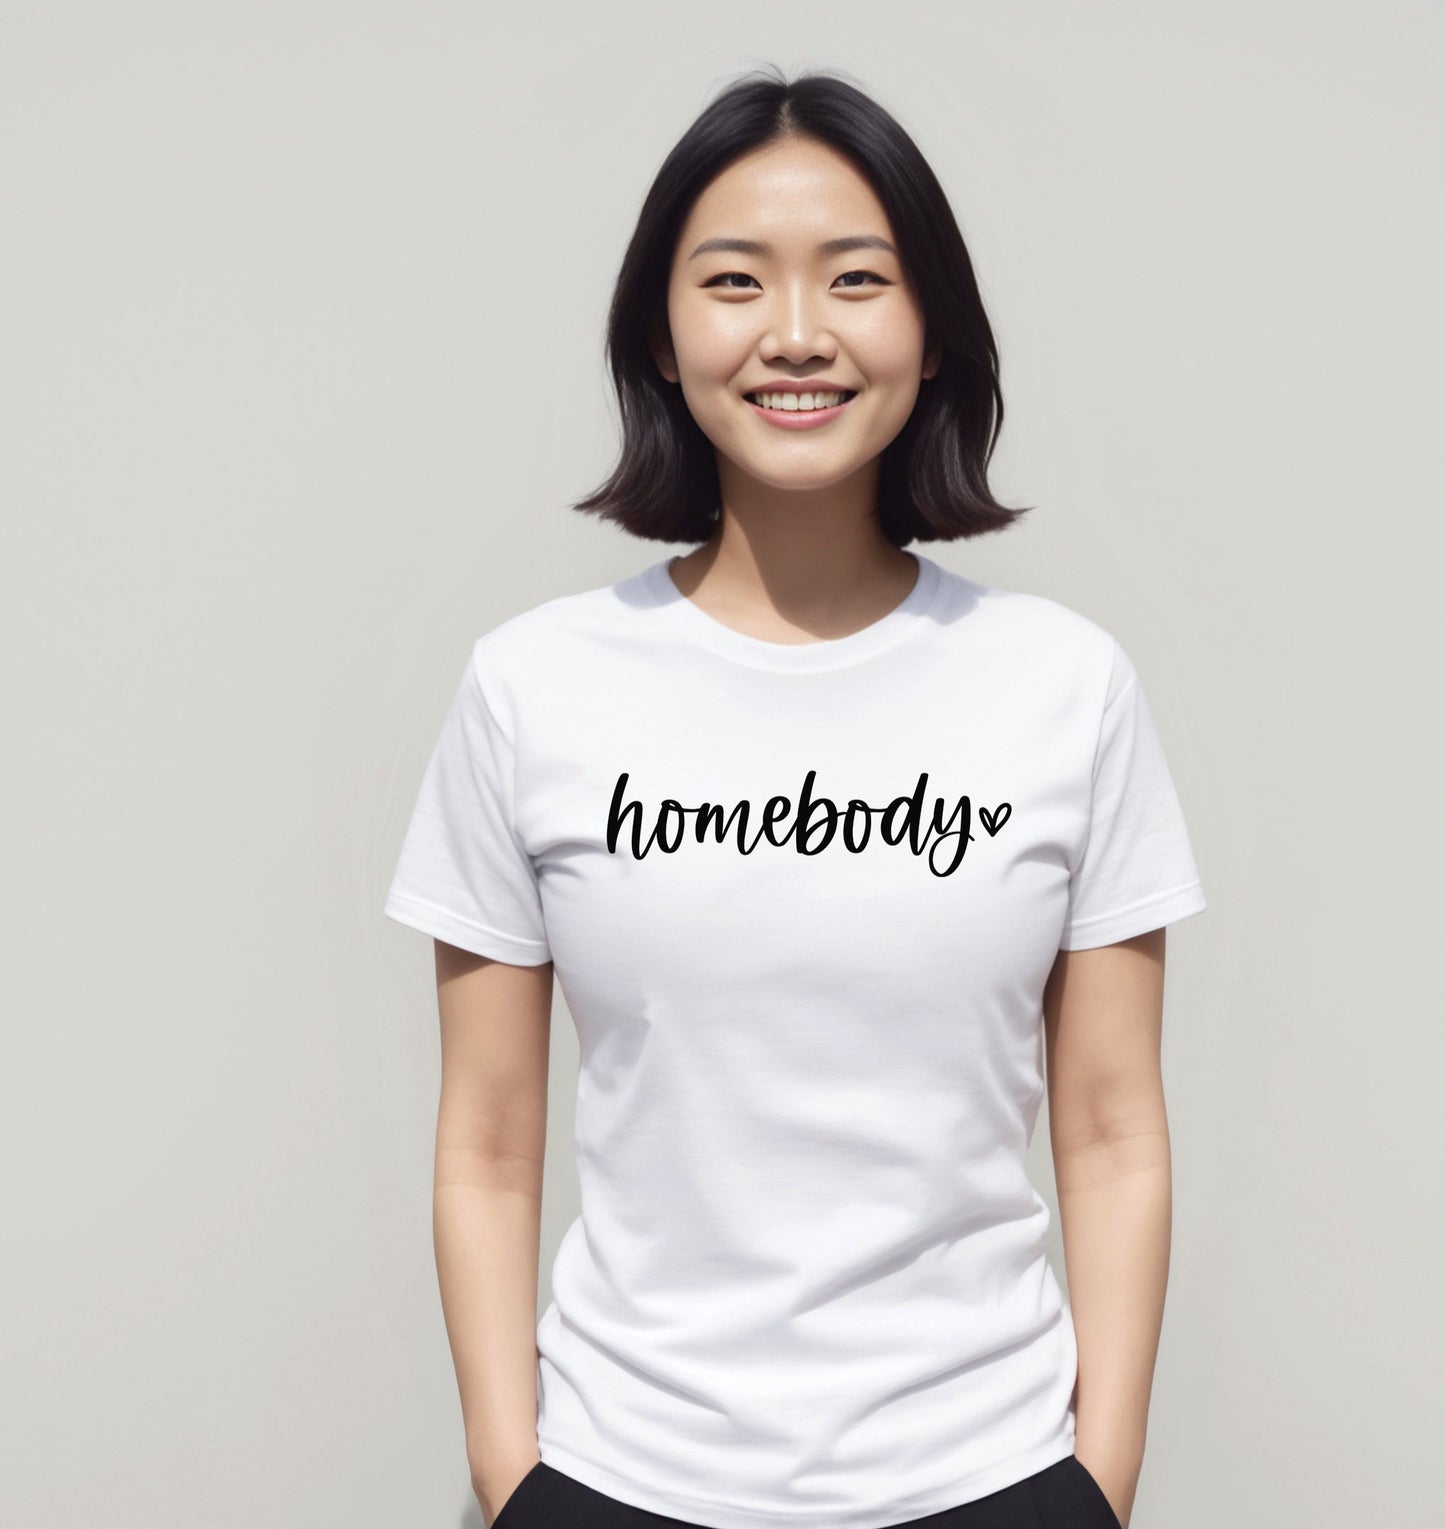 Homebody Women’s Shirt, Cute Women's Graphic Shirt, Gift for Homebody, Roommate Shirt, Gift for Wife, Gift for Her, Homebody Shirt